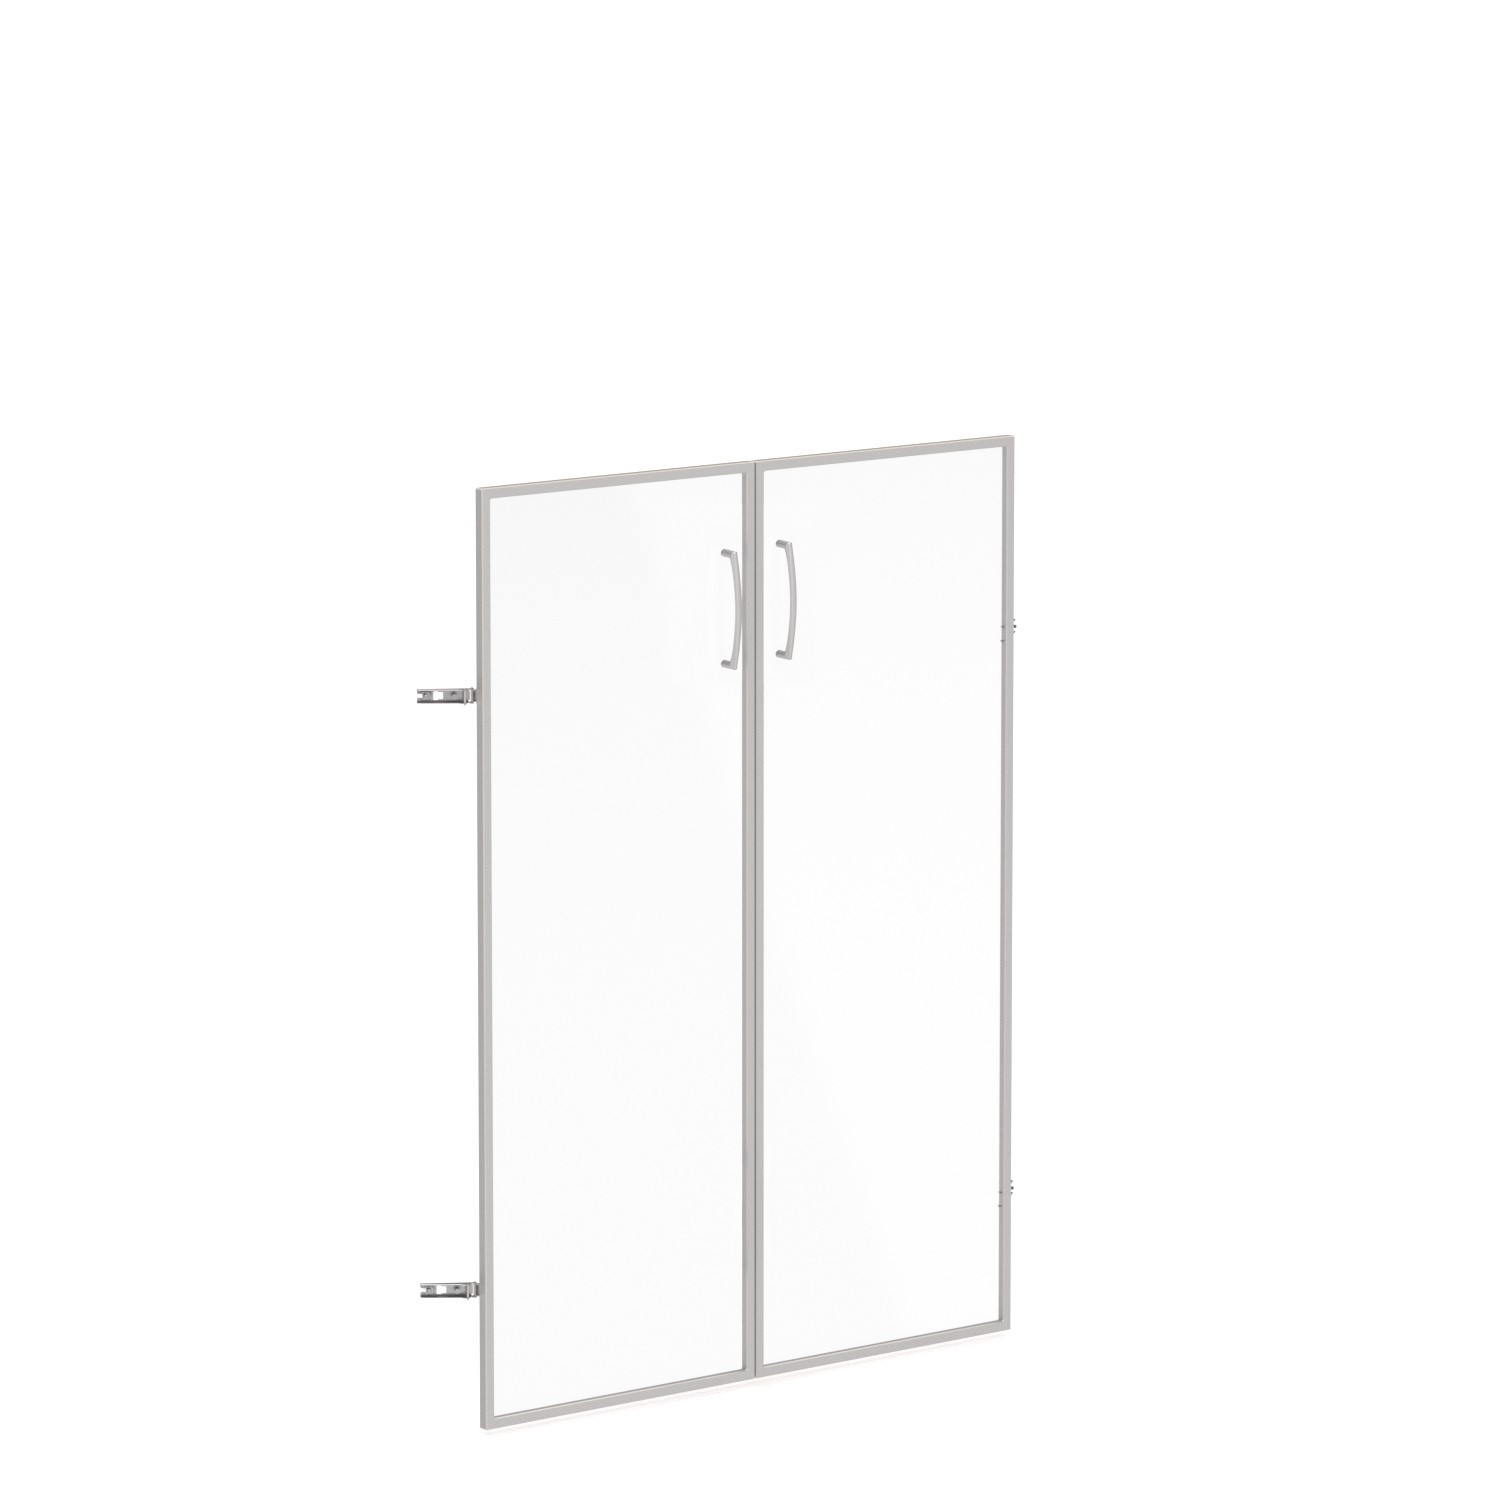 Skleněné dveře v AL rámu, výška 140,3cm, šířka 78,6cm (Skleněné dveře v hliníkovém rámu pro skříň se 4 policemi)